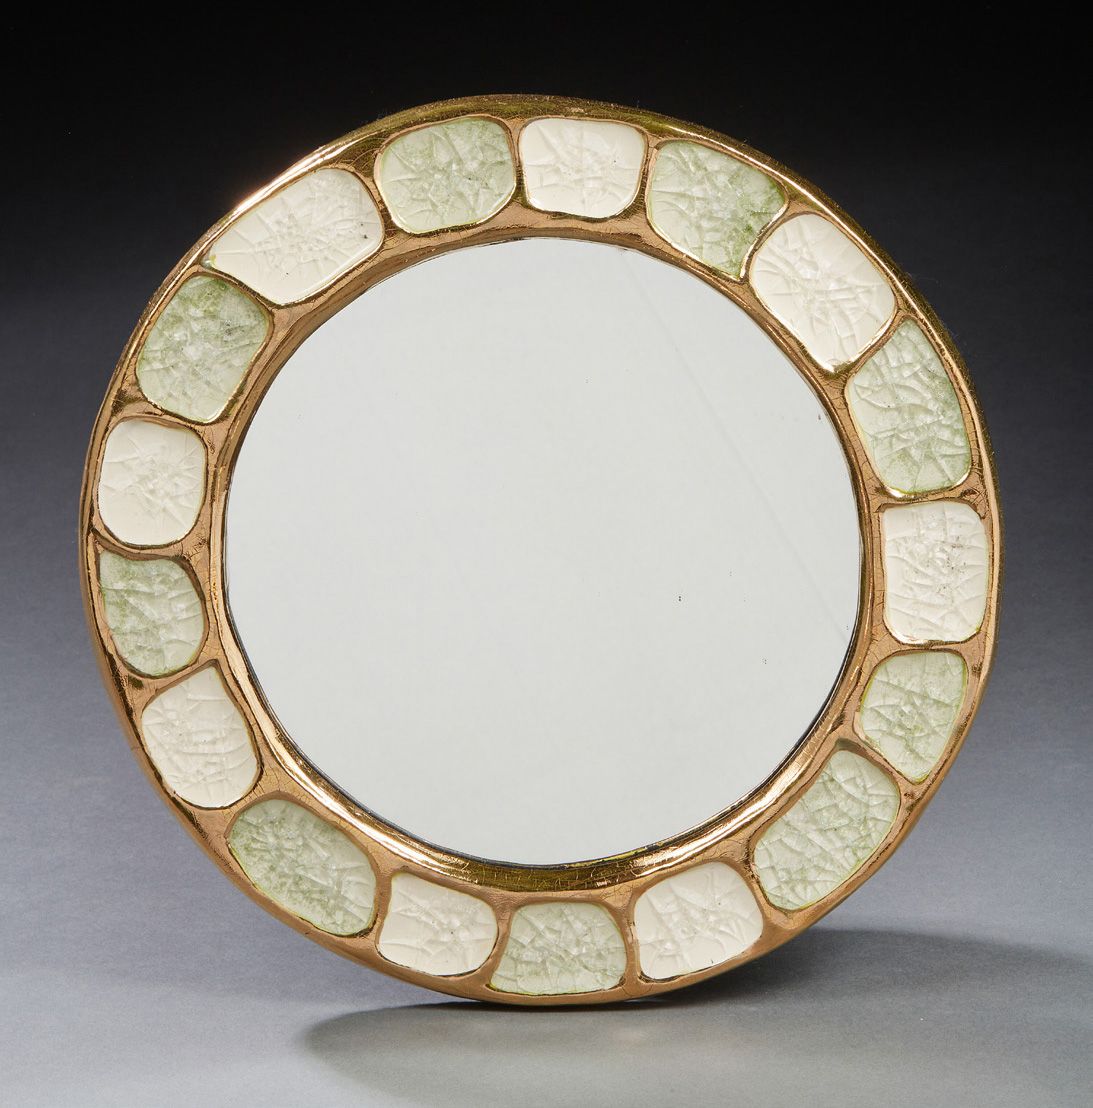 MITHÉ ESPELT (1923-2020) Ceramic crystal mirror
Diam.: 30 cm